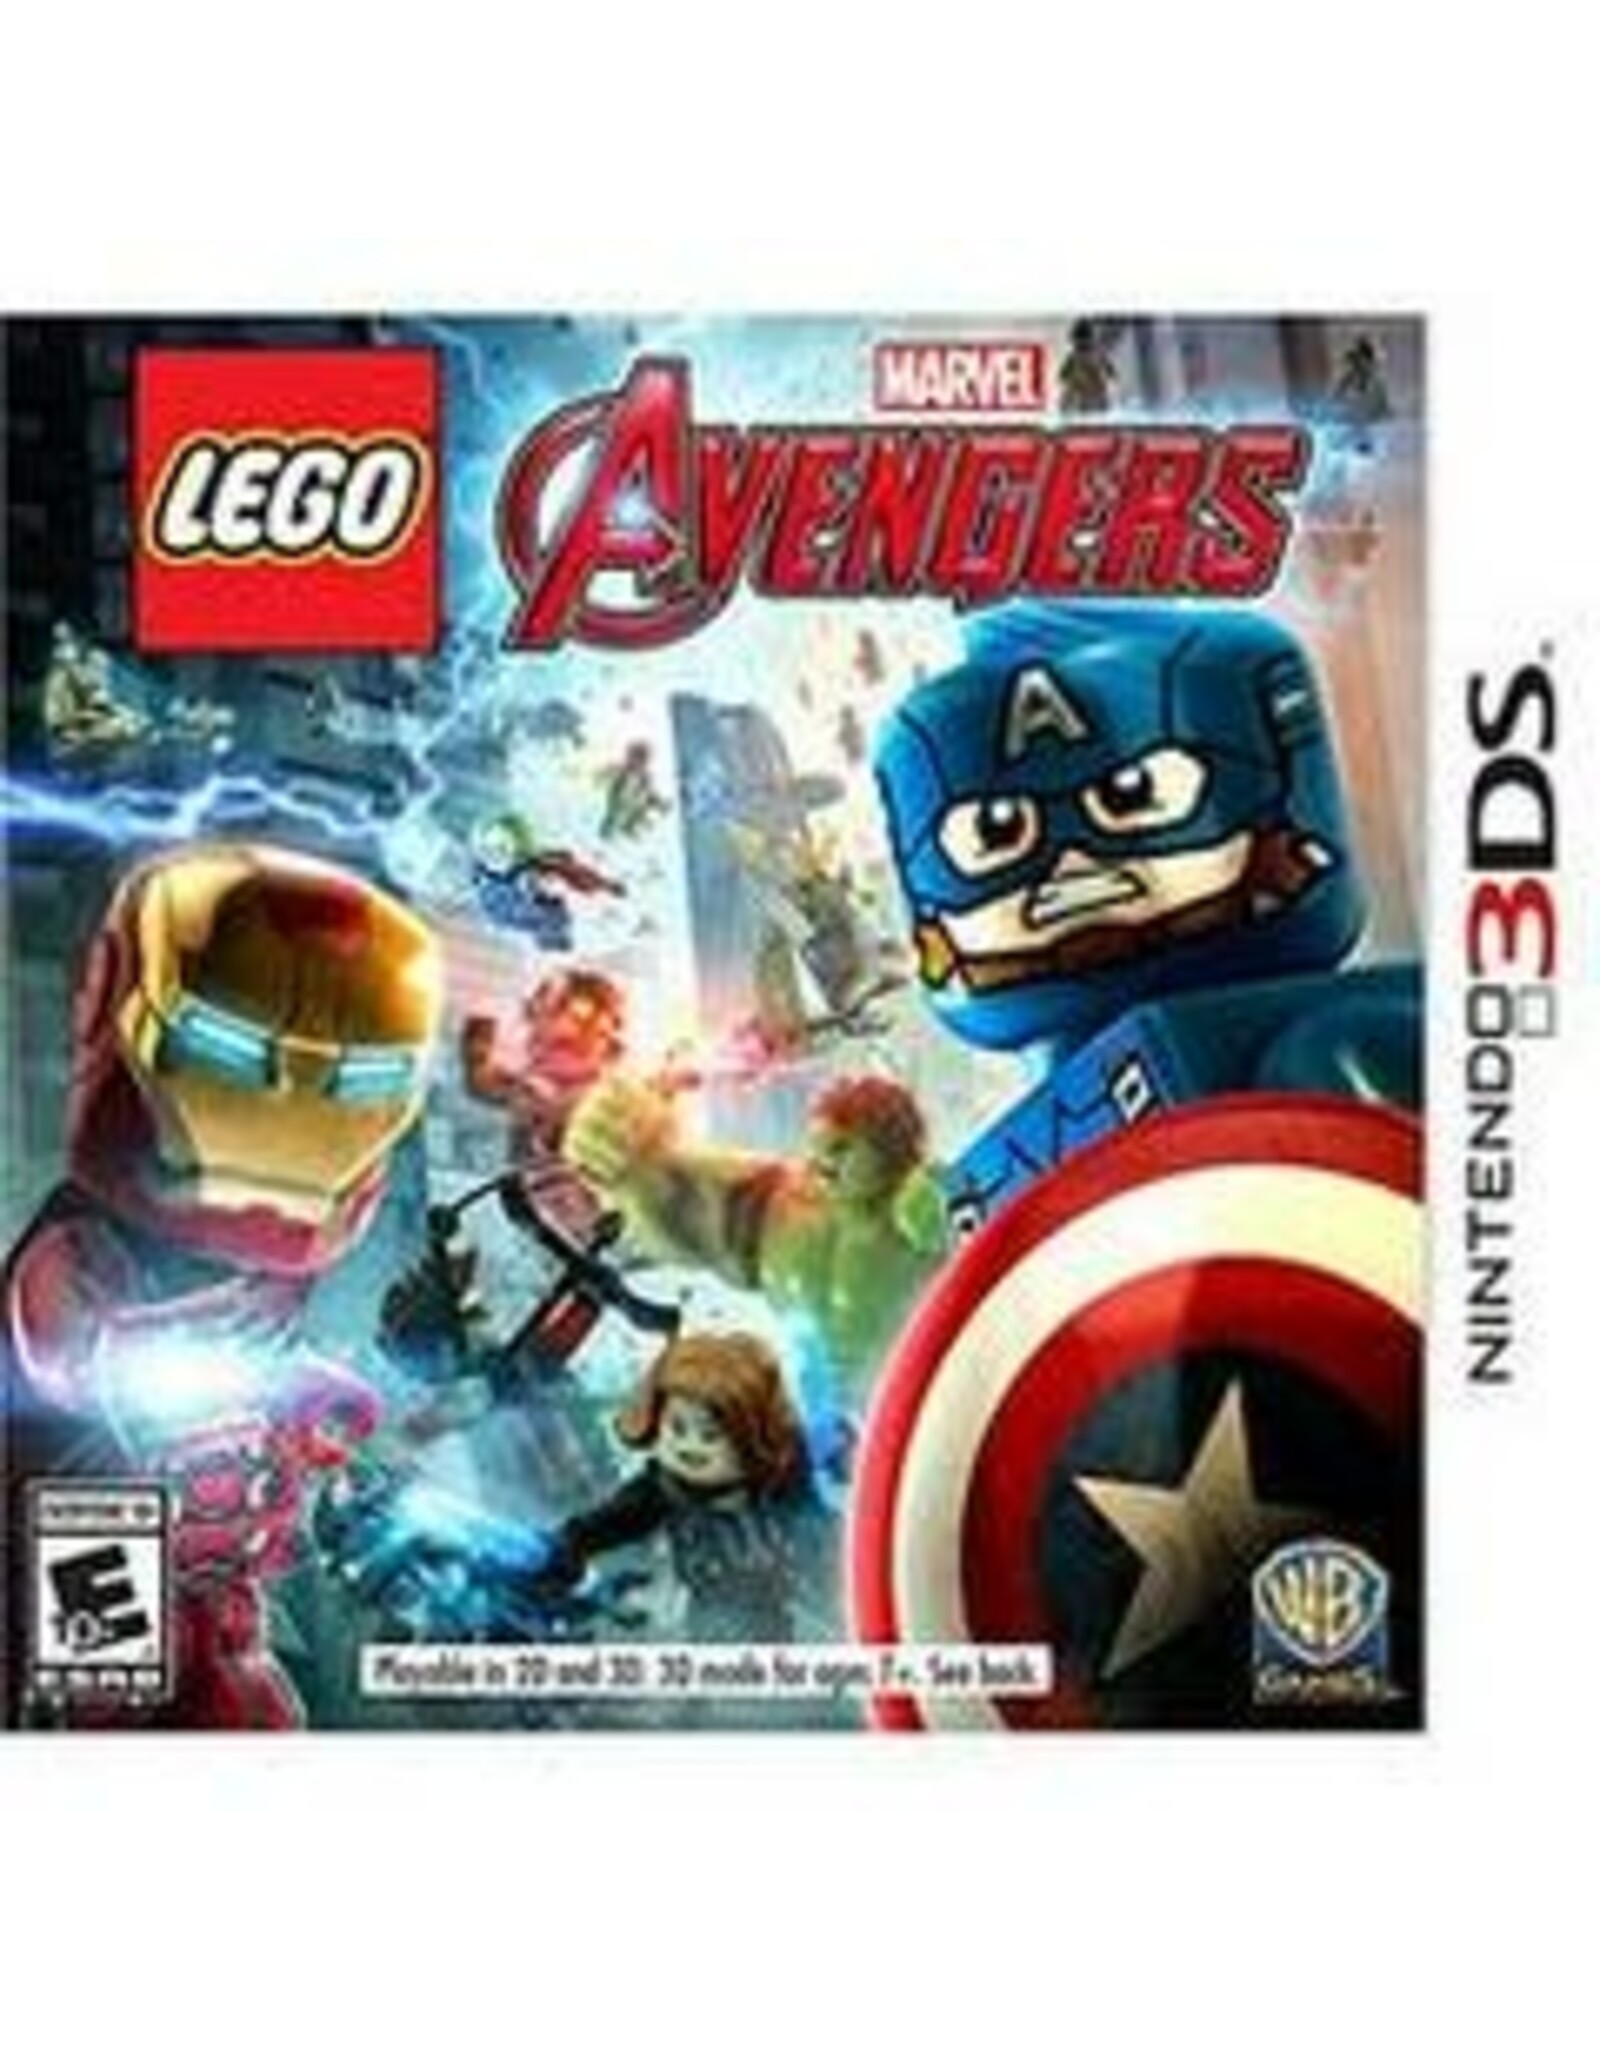 Nintendo 3DS LEGO Marvel's Avengers (CiB)